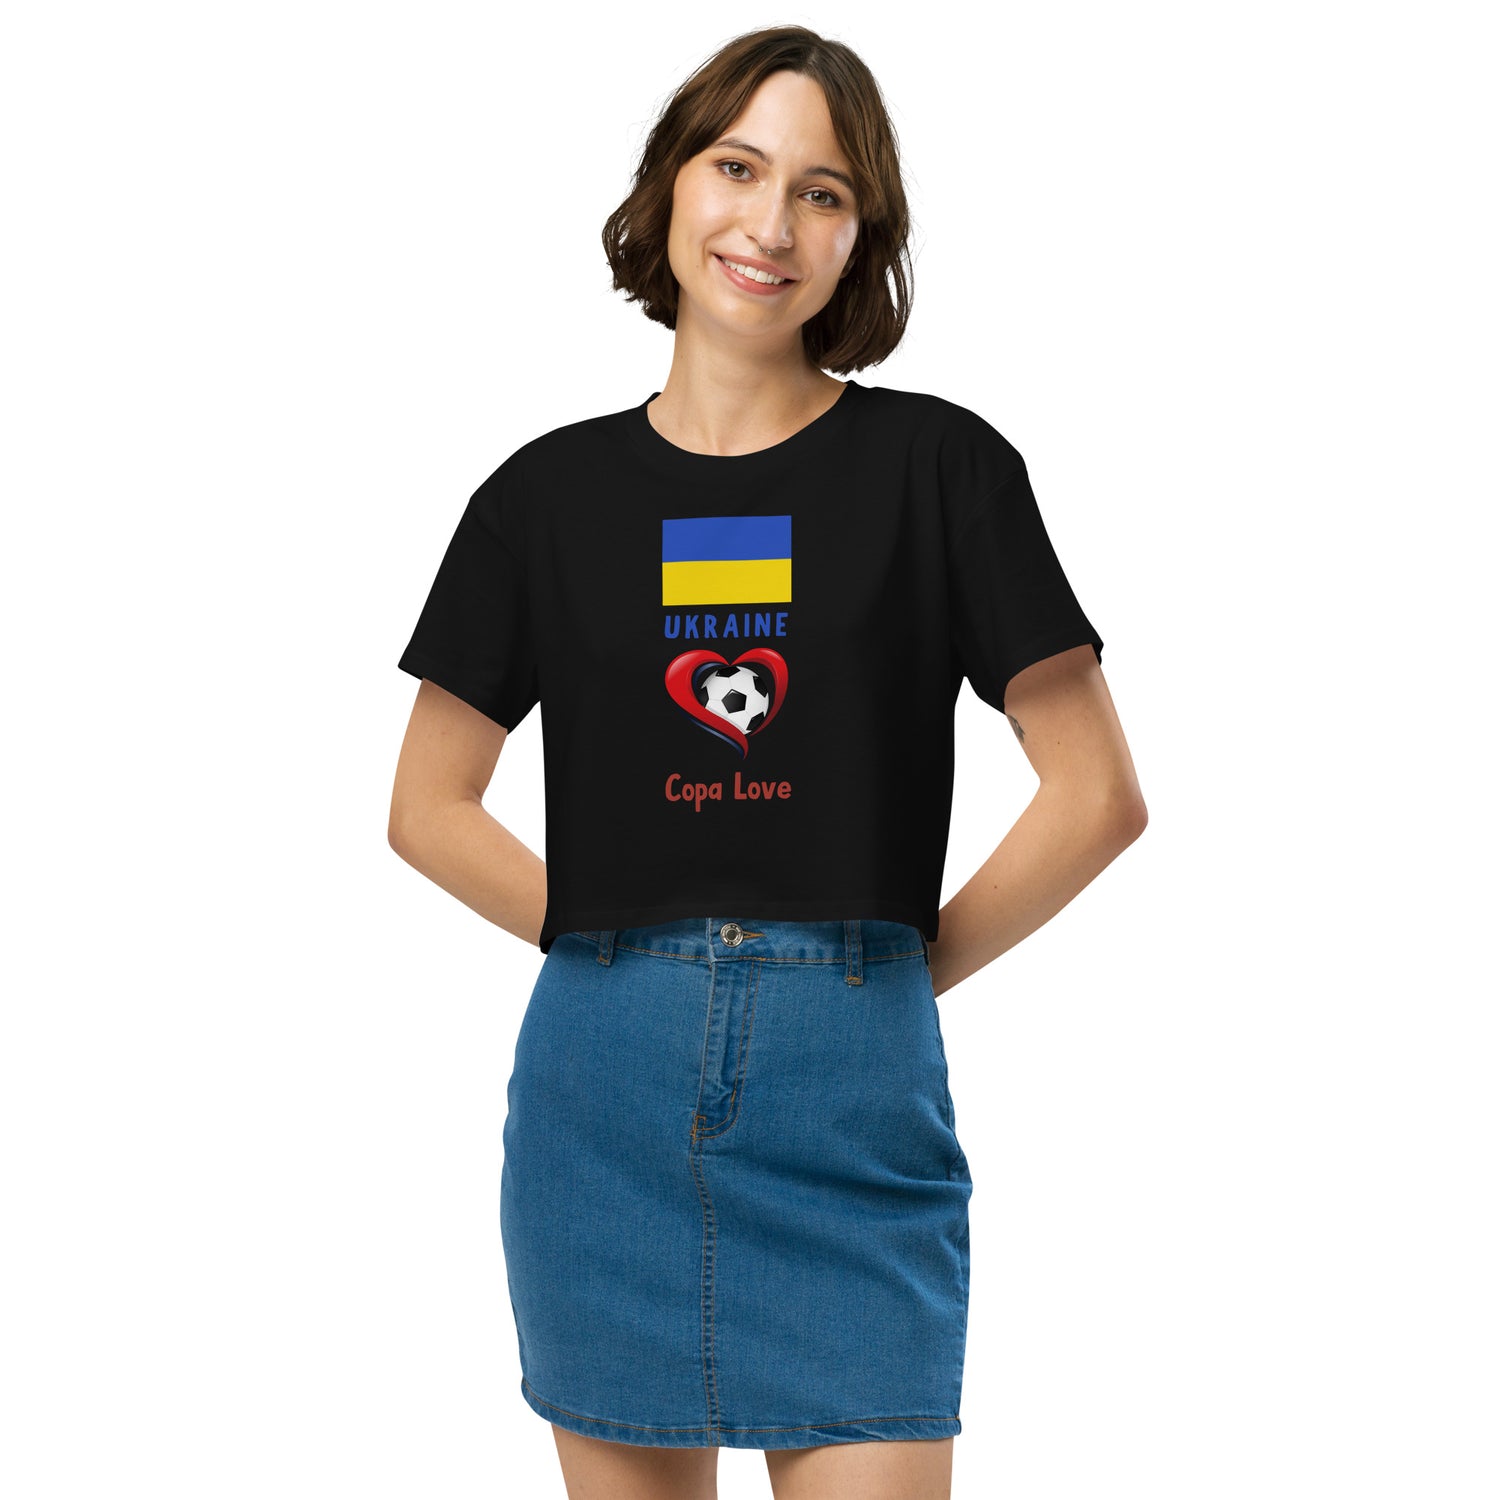 UKRAINE - Copa Love Women’s crop top